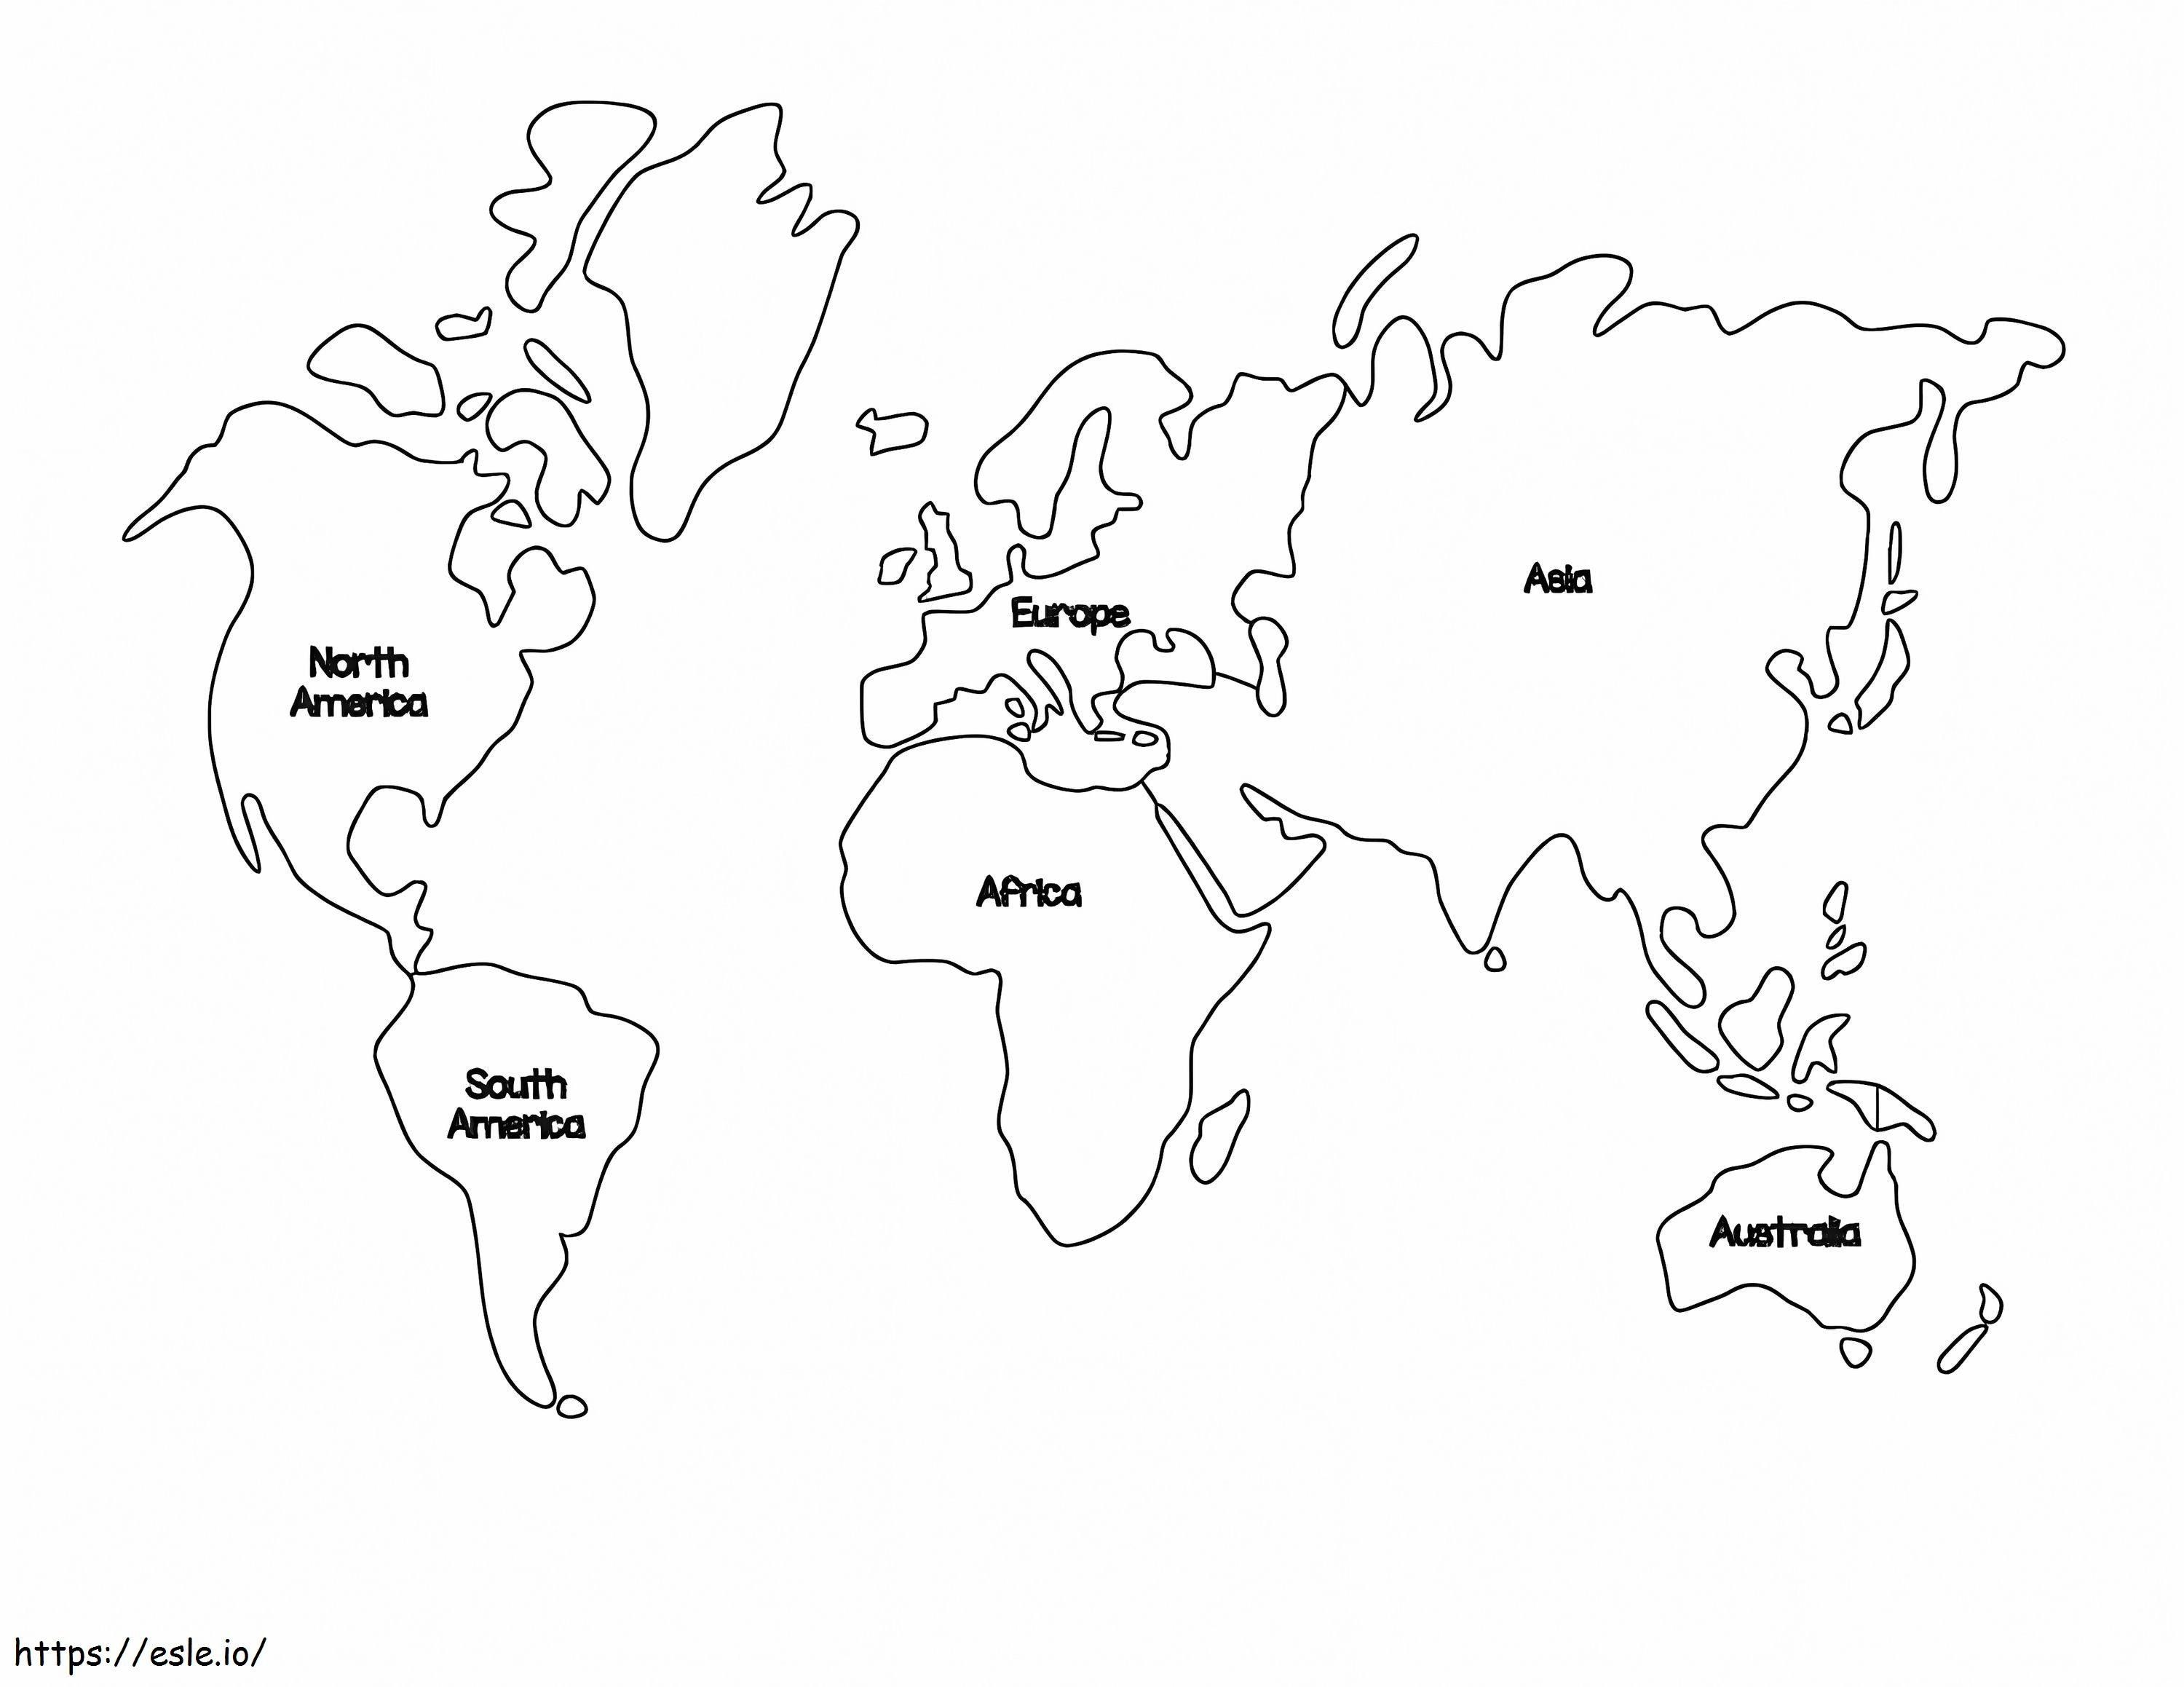 Negara Peta Dunia Untuk Mewarnai Gambar Mewarnai